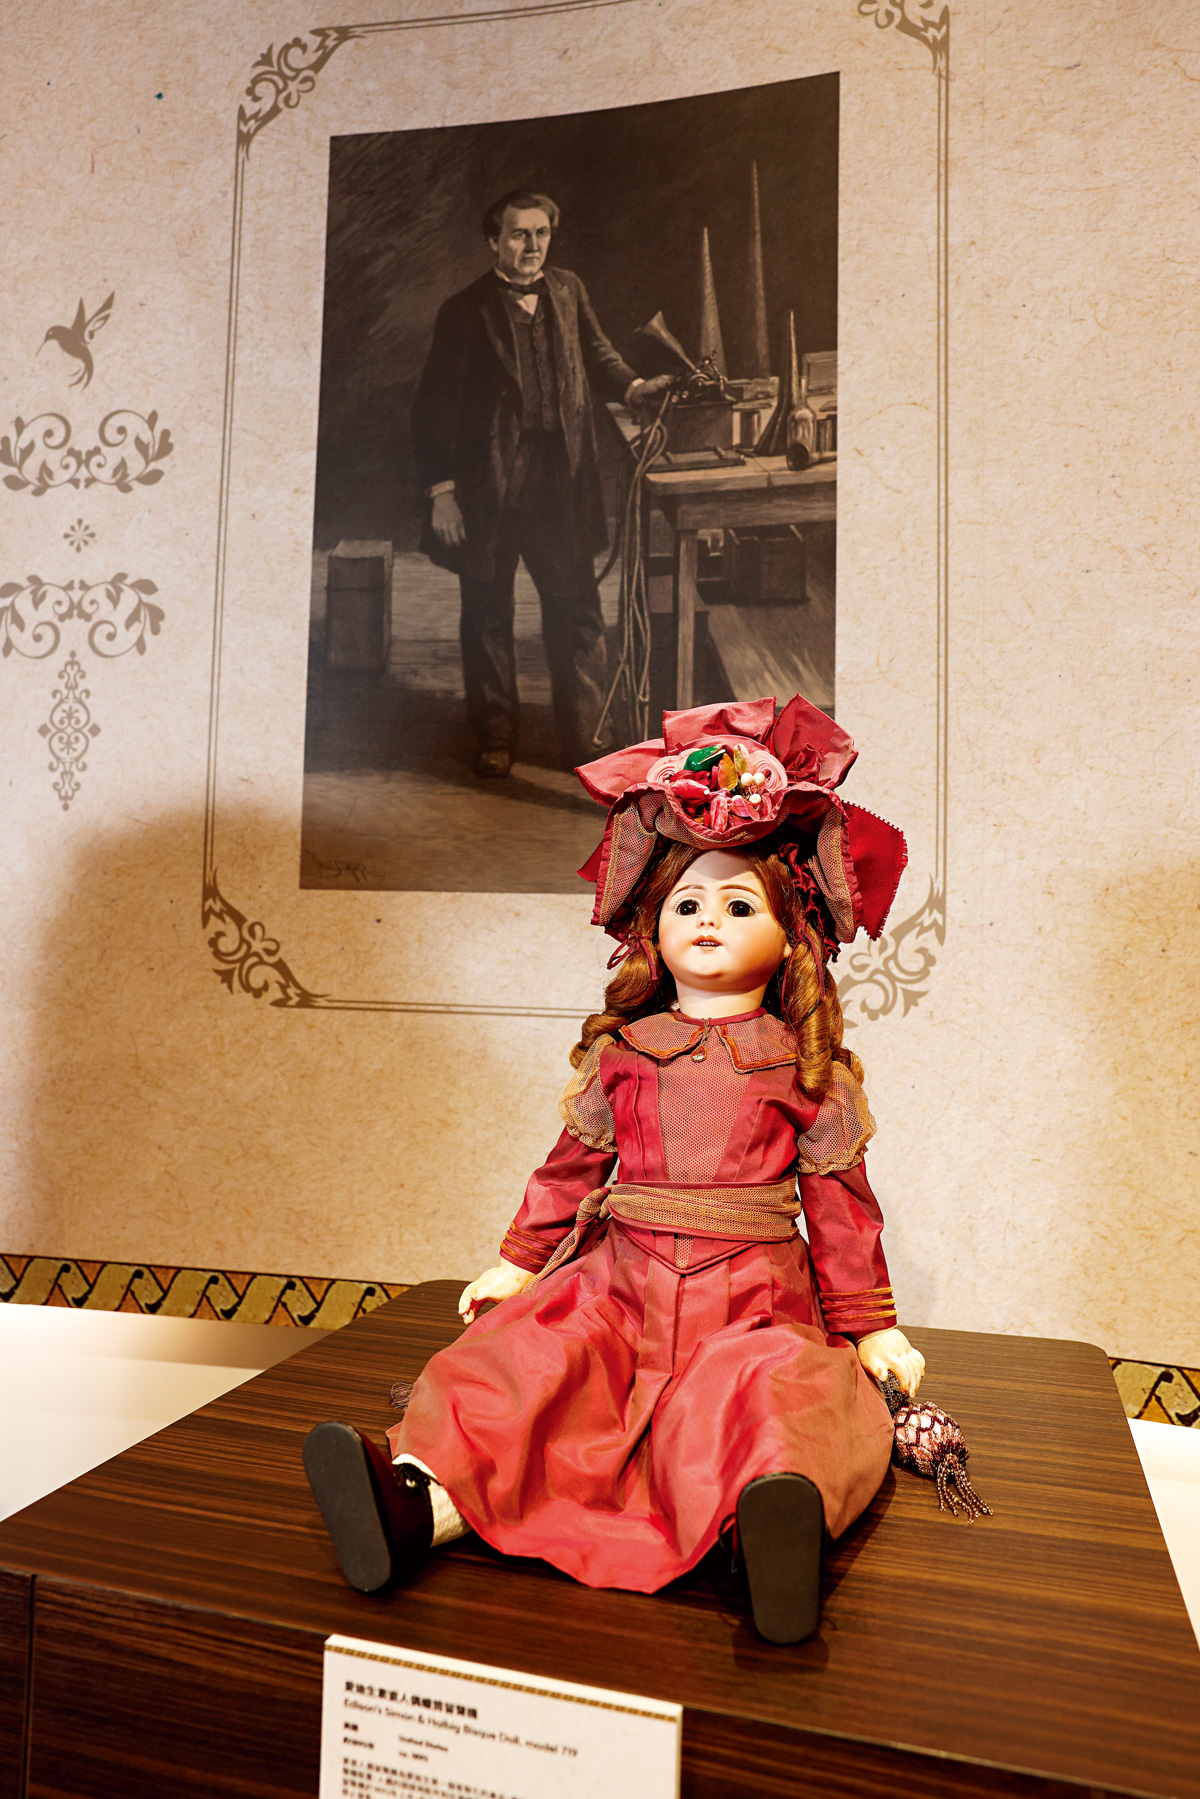 從可愛瓷娃娃變成鬼娃叫聲，百年前僅上市數週就停產並下架回收，為極其罕見愛迪生發明的珍品。（攝影：駱裕隆）